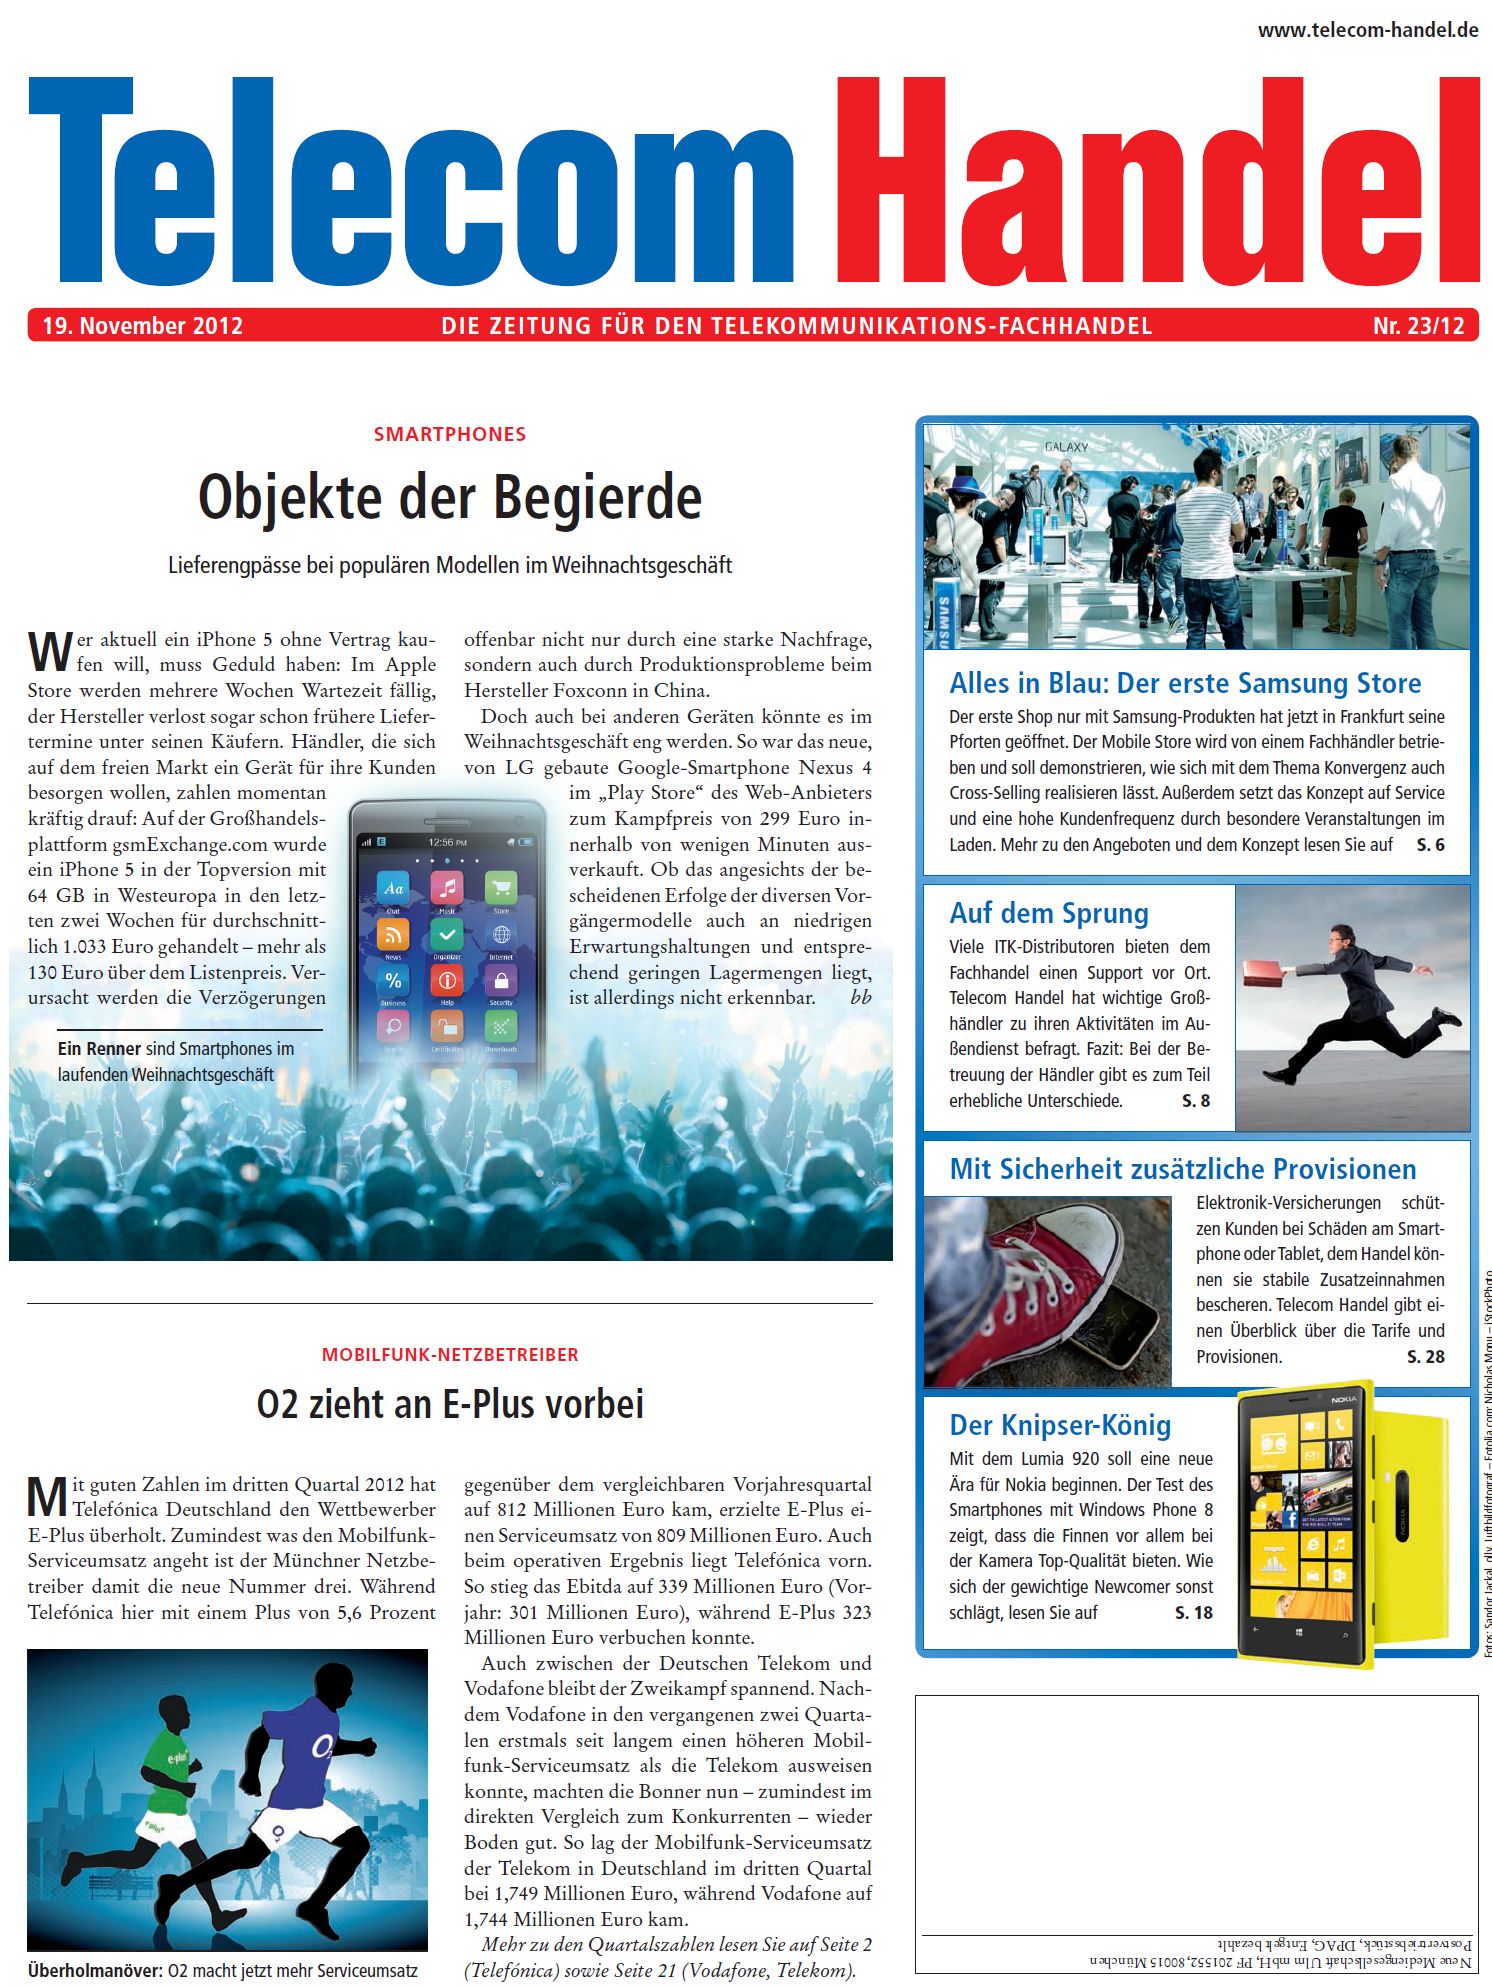 Telecom Handel Ausgabe 23/2012